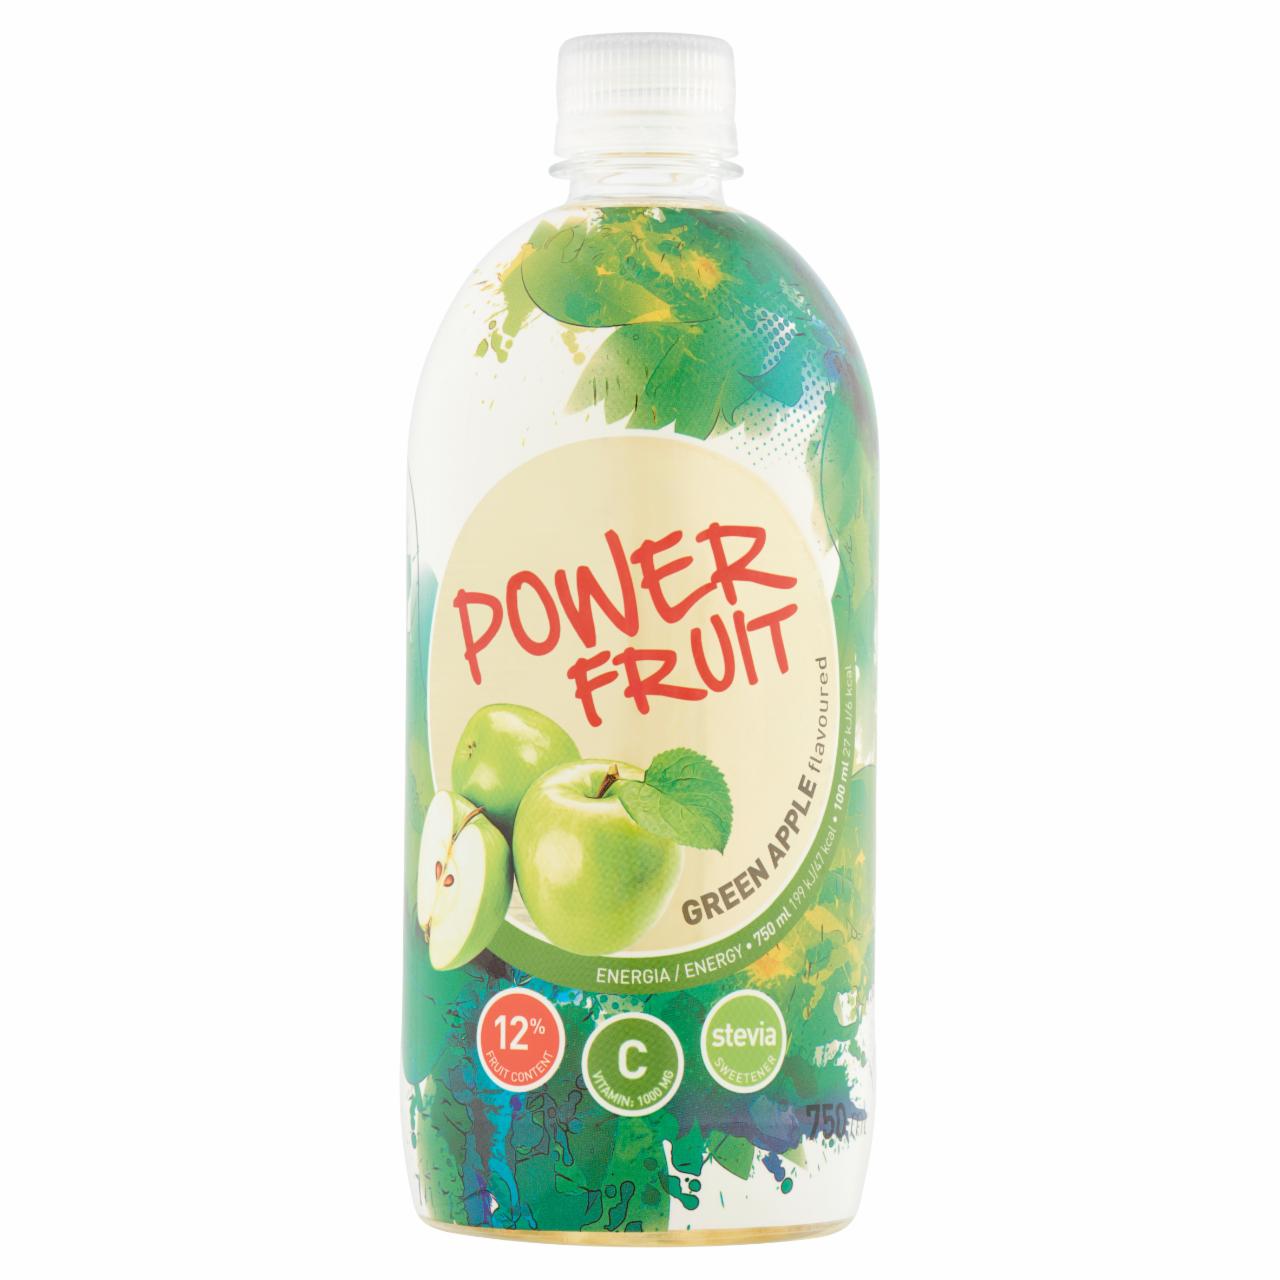 Képek - Power Fruit zöldalma ízű, forrásvíz alapú, energiaszegény gyümölcsital édesítőszerekkel 750 ml